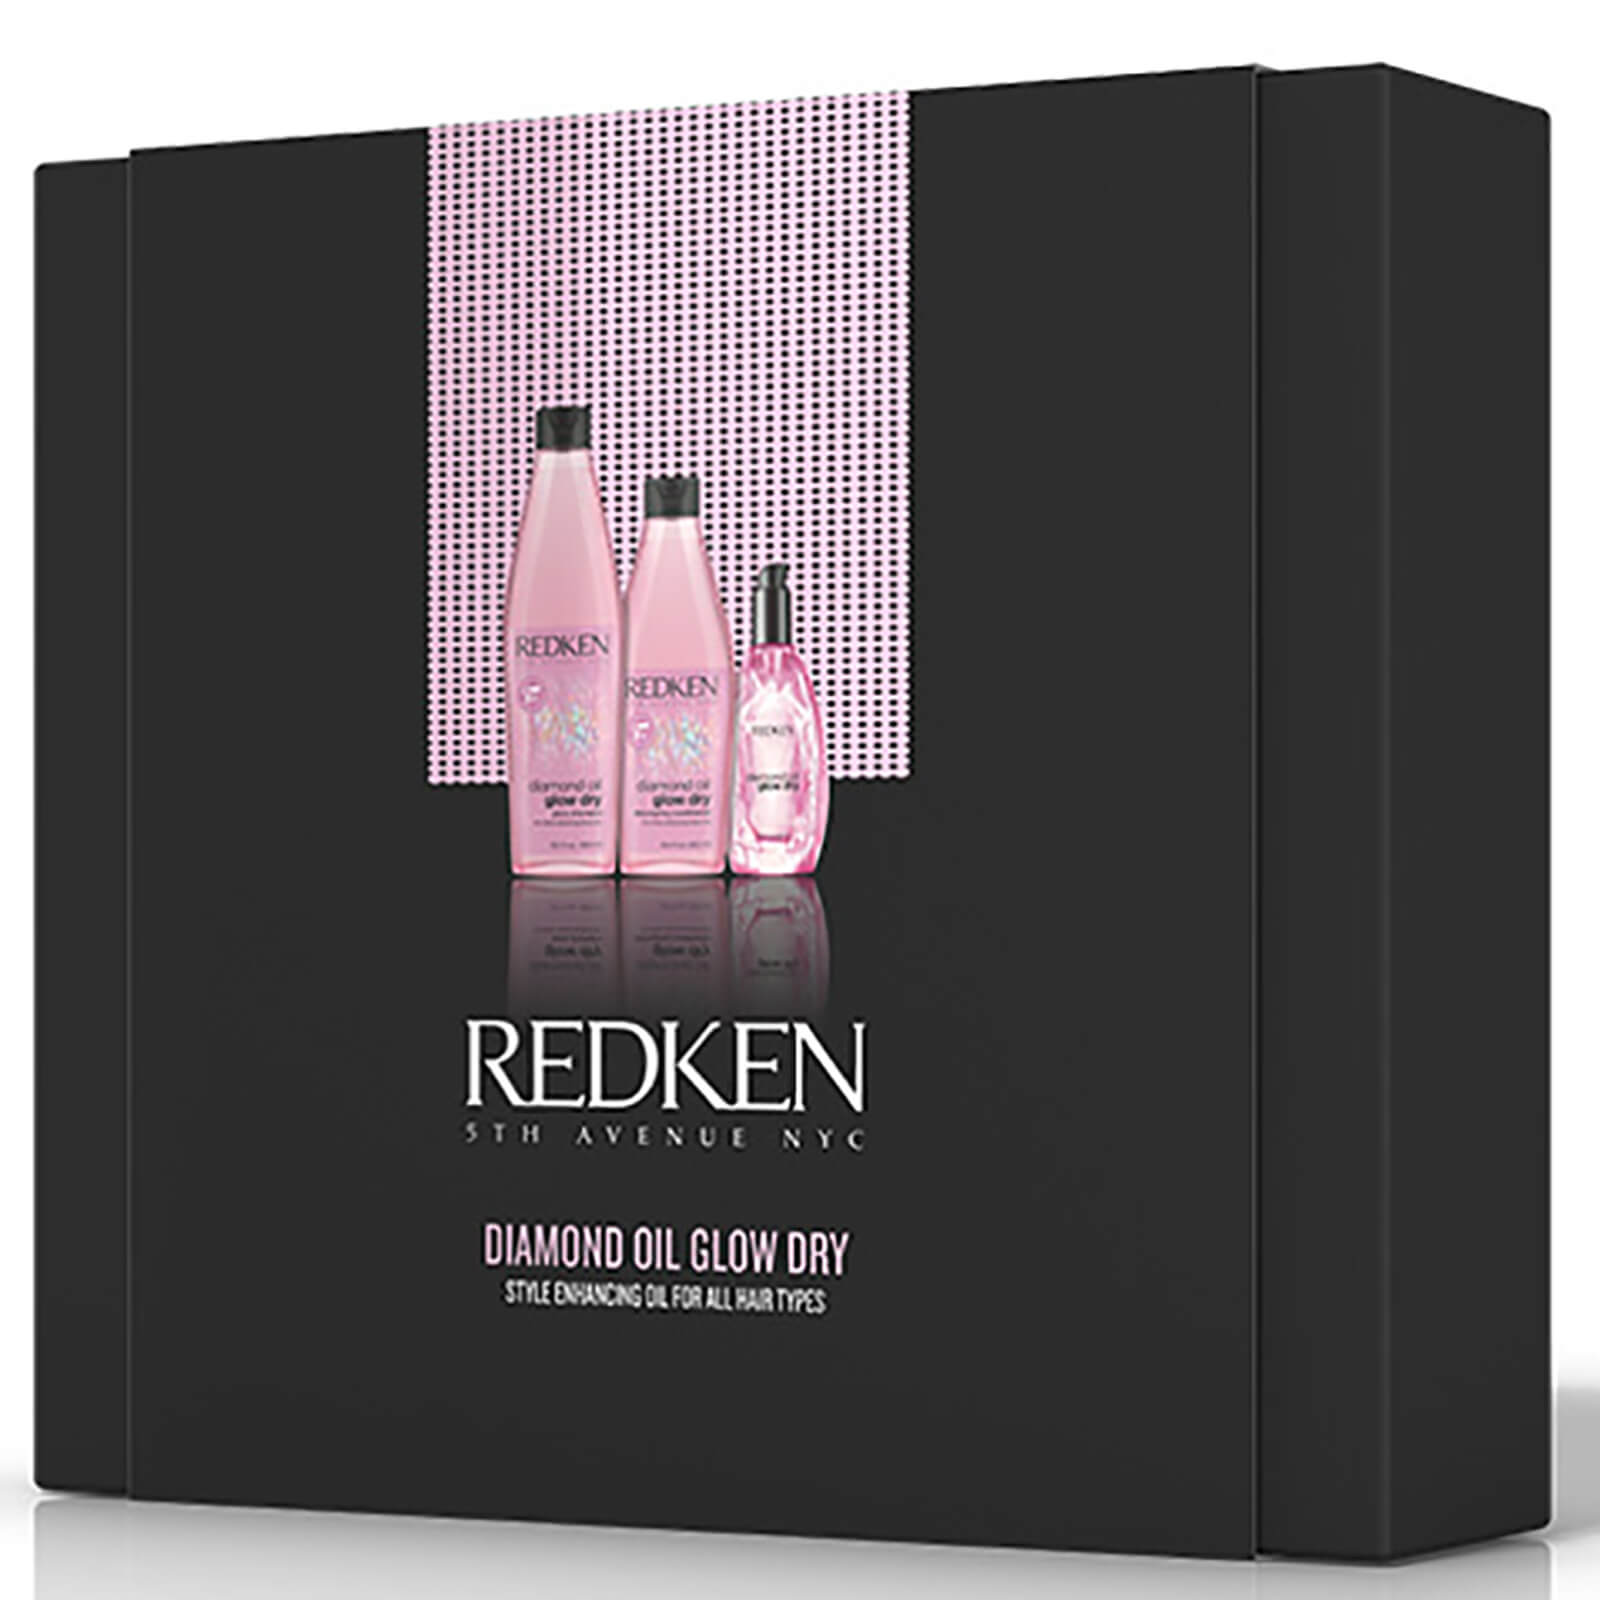 Redken Diamond Oil Glow Dry Gift Pack